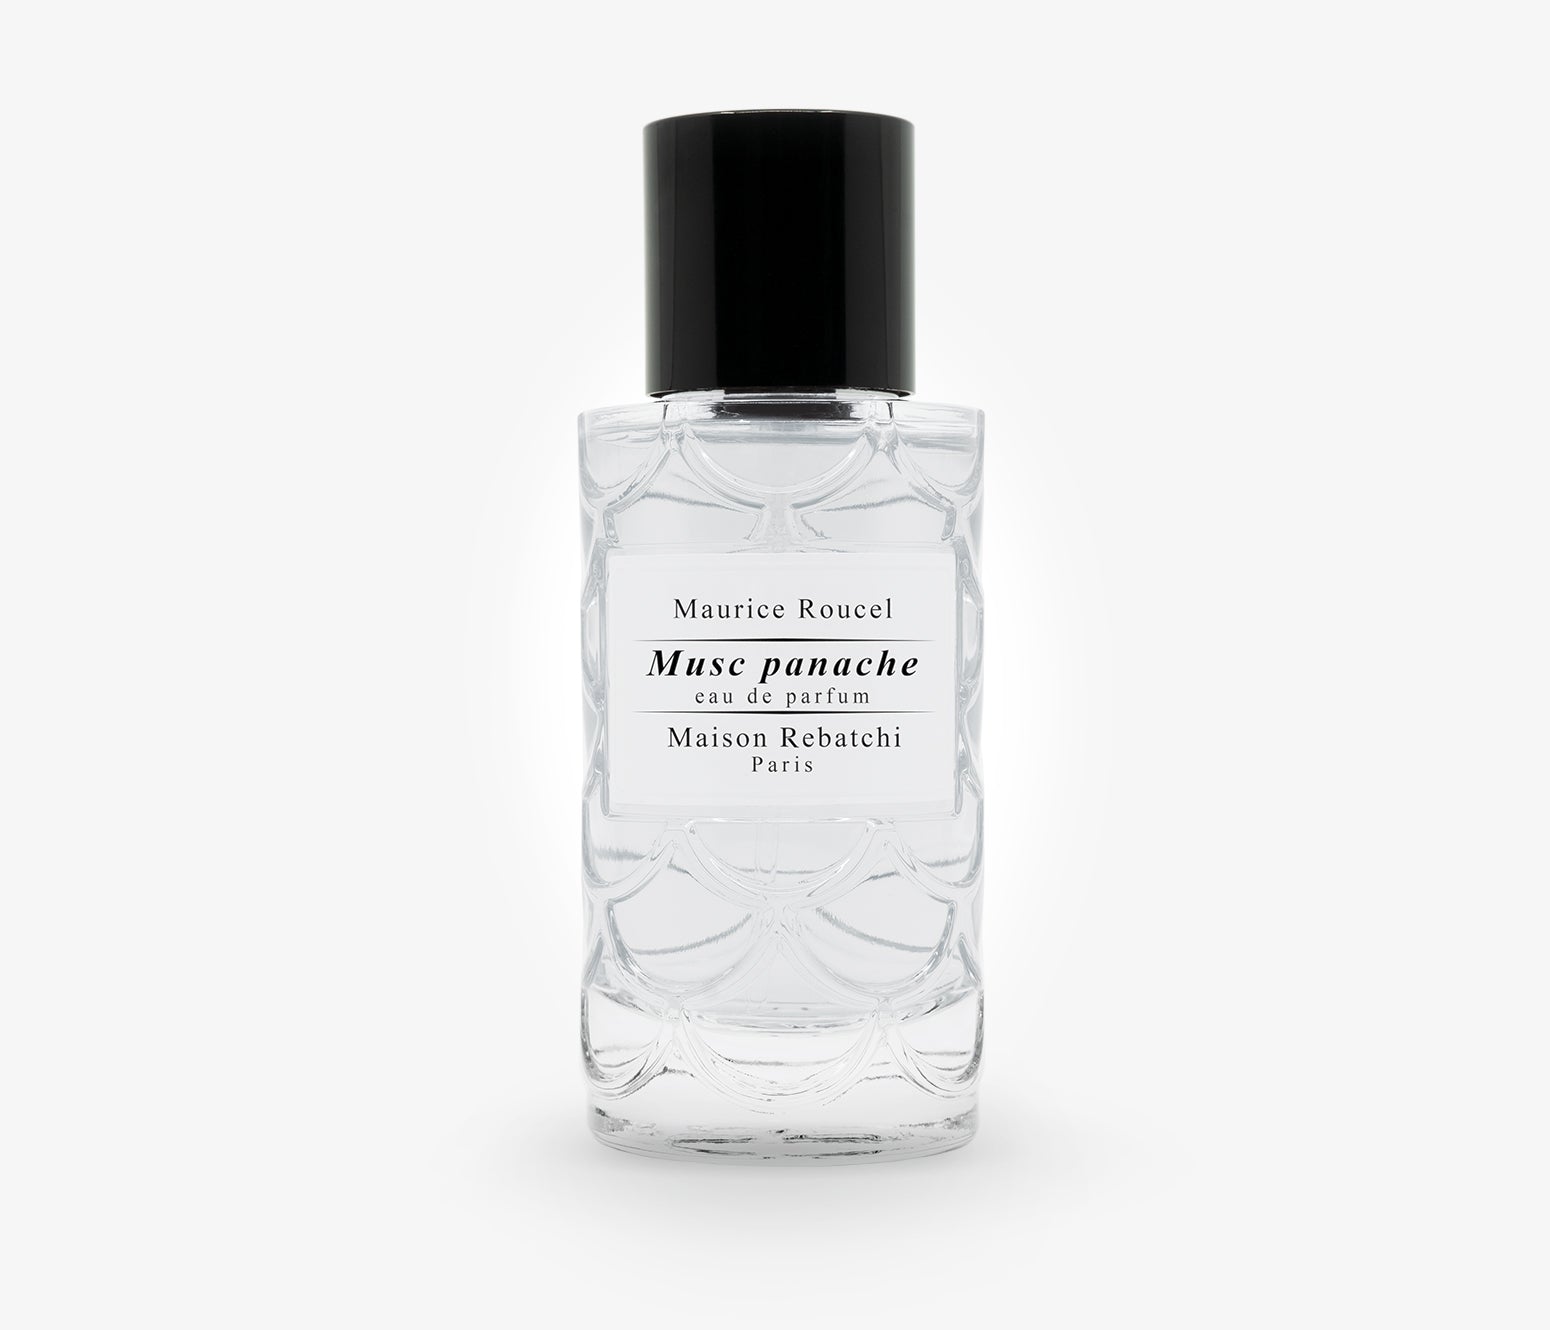 Maison Rebatchi - Musc Panache - 50ml - XJO001 - product image - Fragrance - Les Senteurs